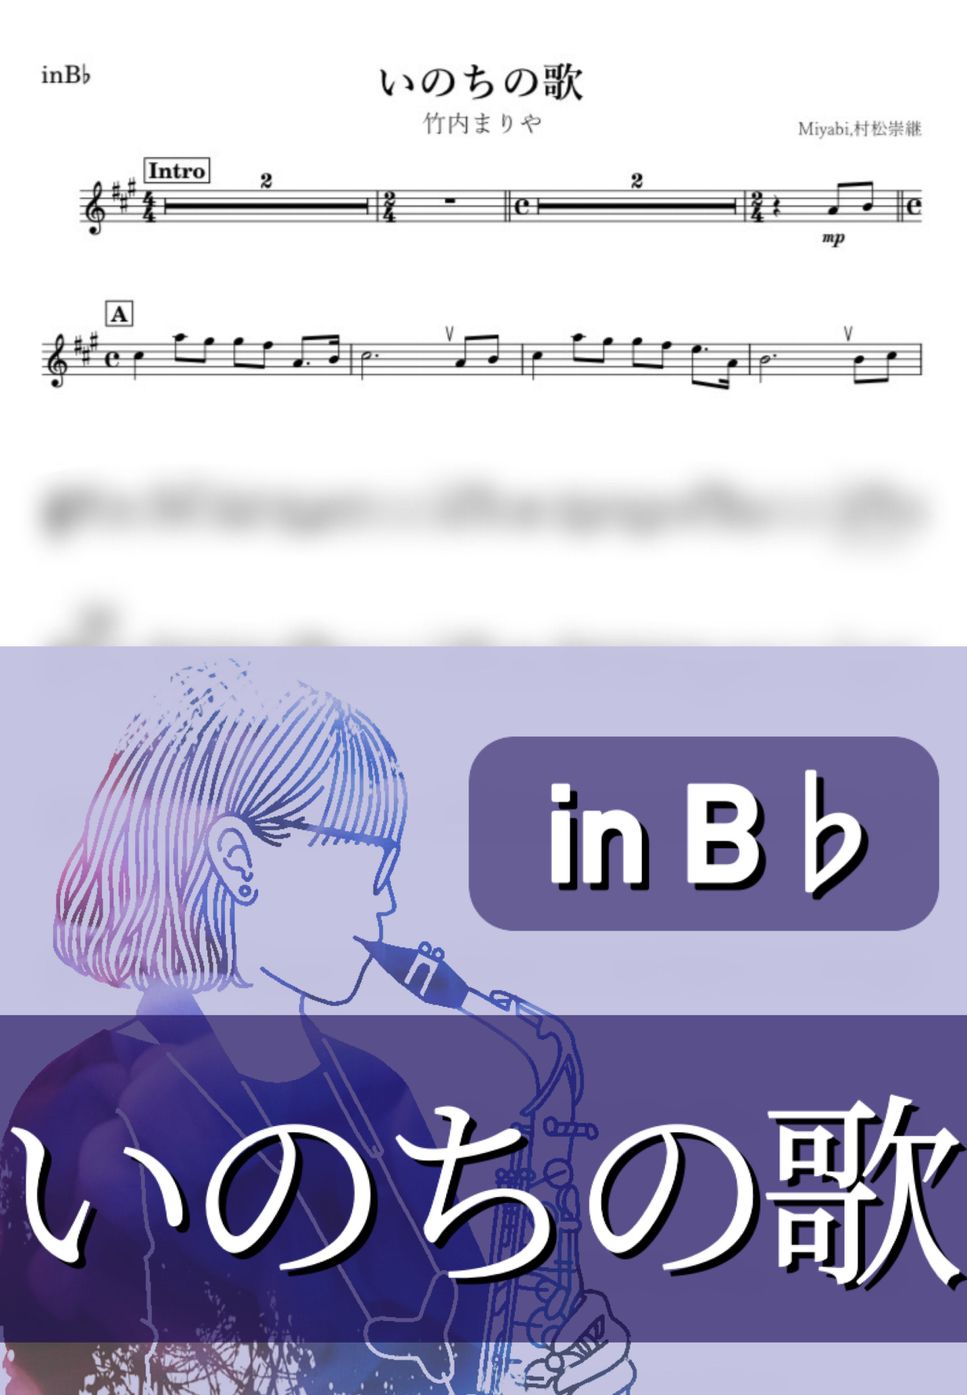 竹内まりや - いのちの歌 (B♭) by kanamusic